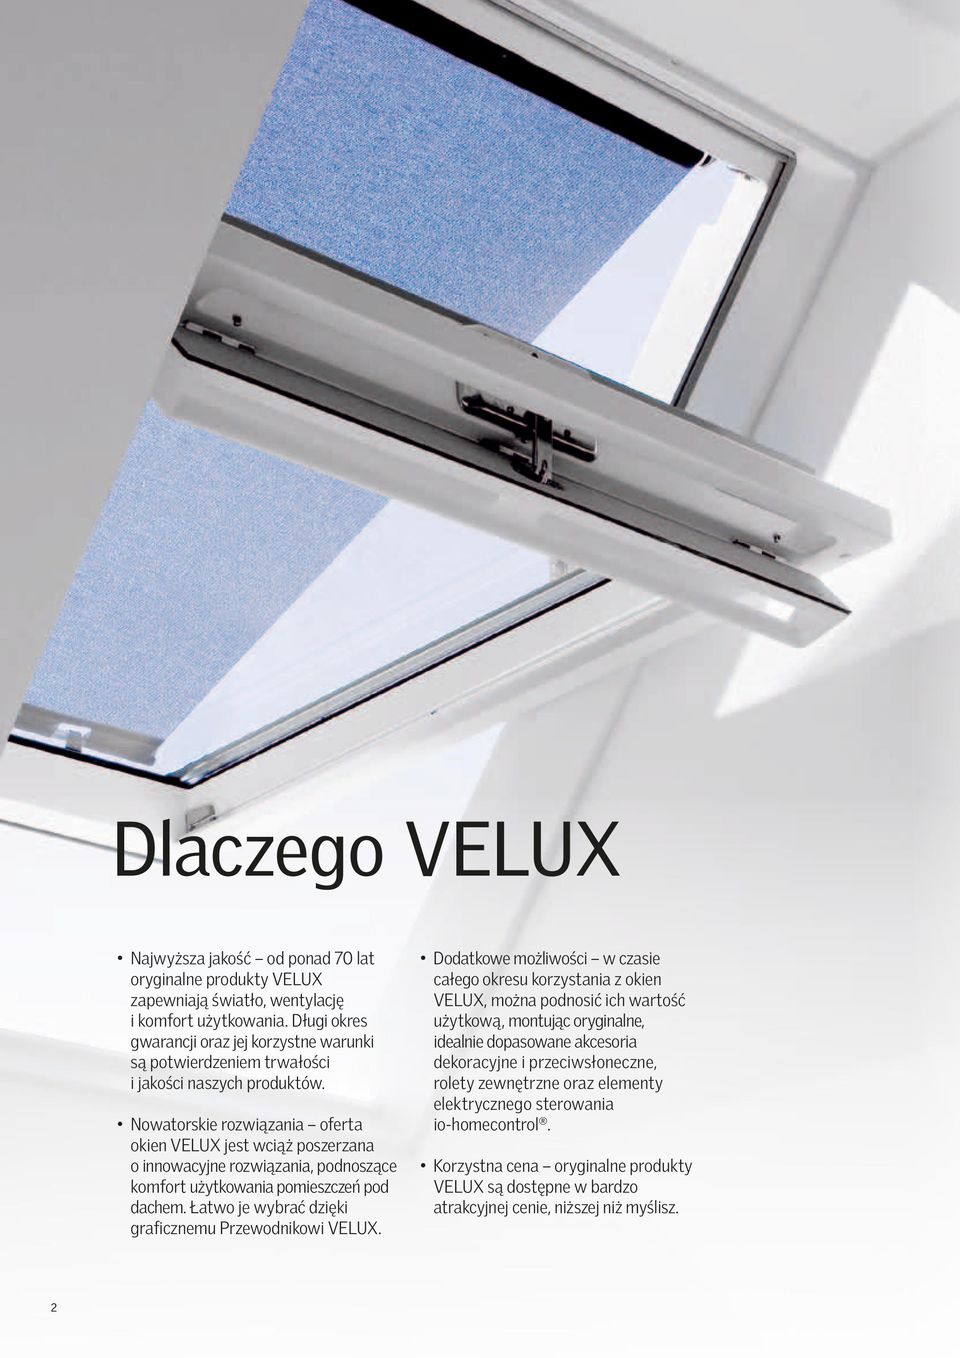 Nowatorskie rozwiązania oferta okien VELUX jest wciąż poszerzana o innowacyjne rozwiązania, podnoszące komfort użytkowania pomieszczeń pod dachem.